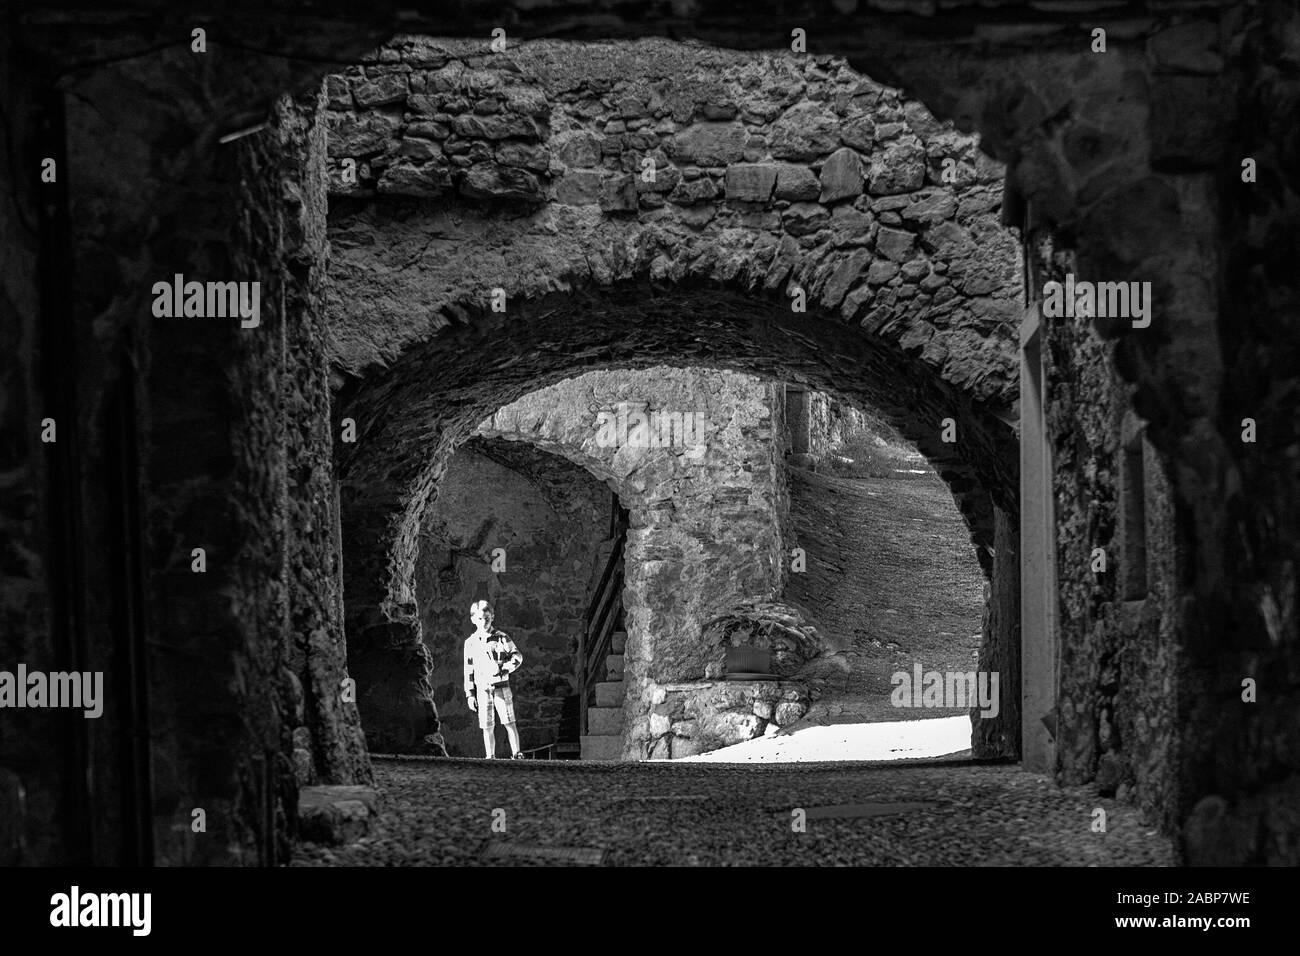 Via Fratelli Bandiera, un tunnel étroit, à travers les arches, Canale di Tenno, Trentino-Alto Adige, Italie. Version noir et blanc Banque D'Images